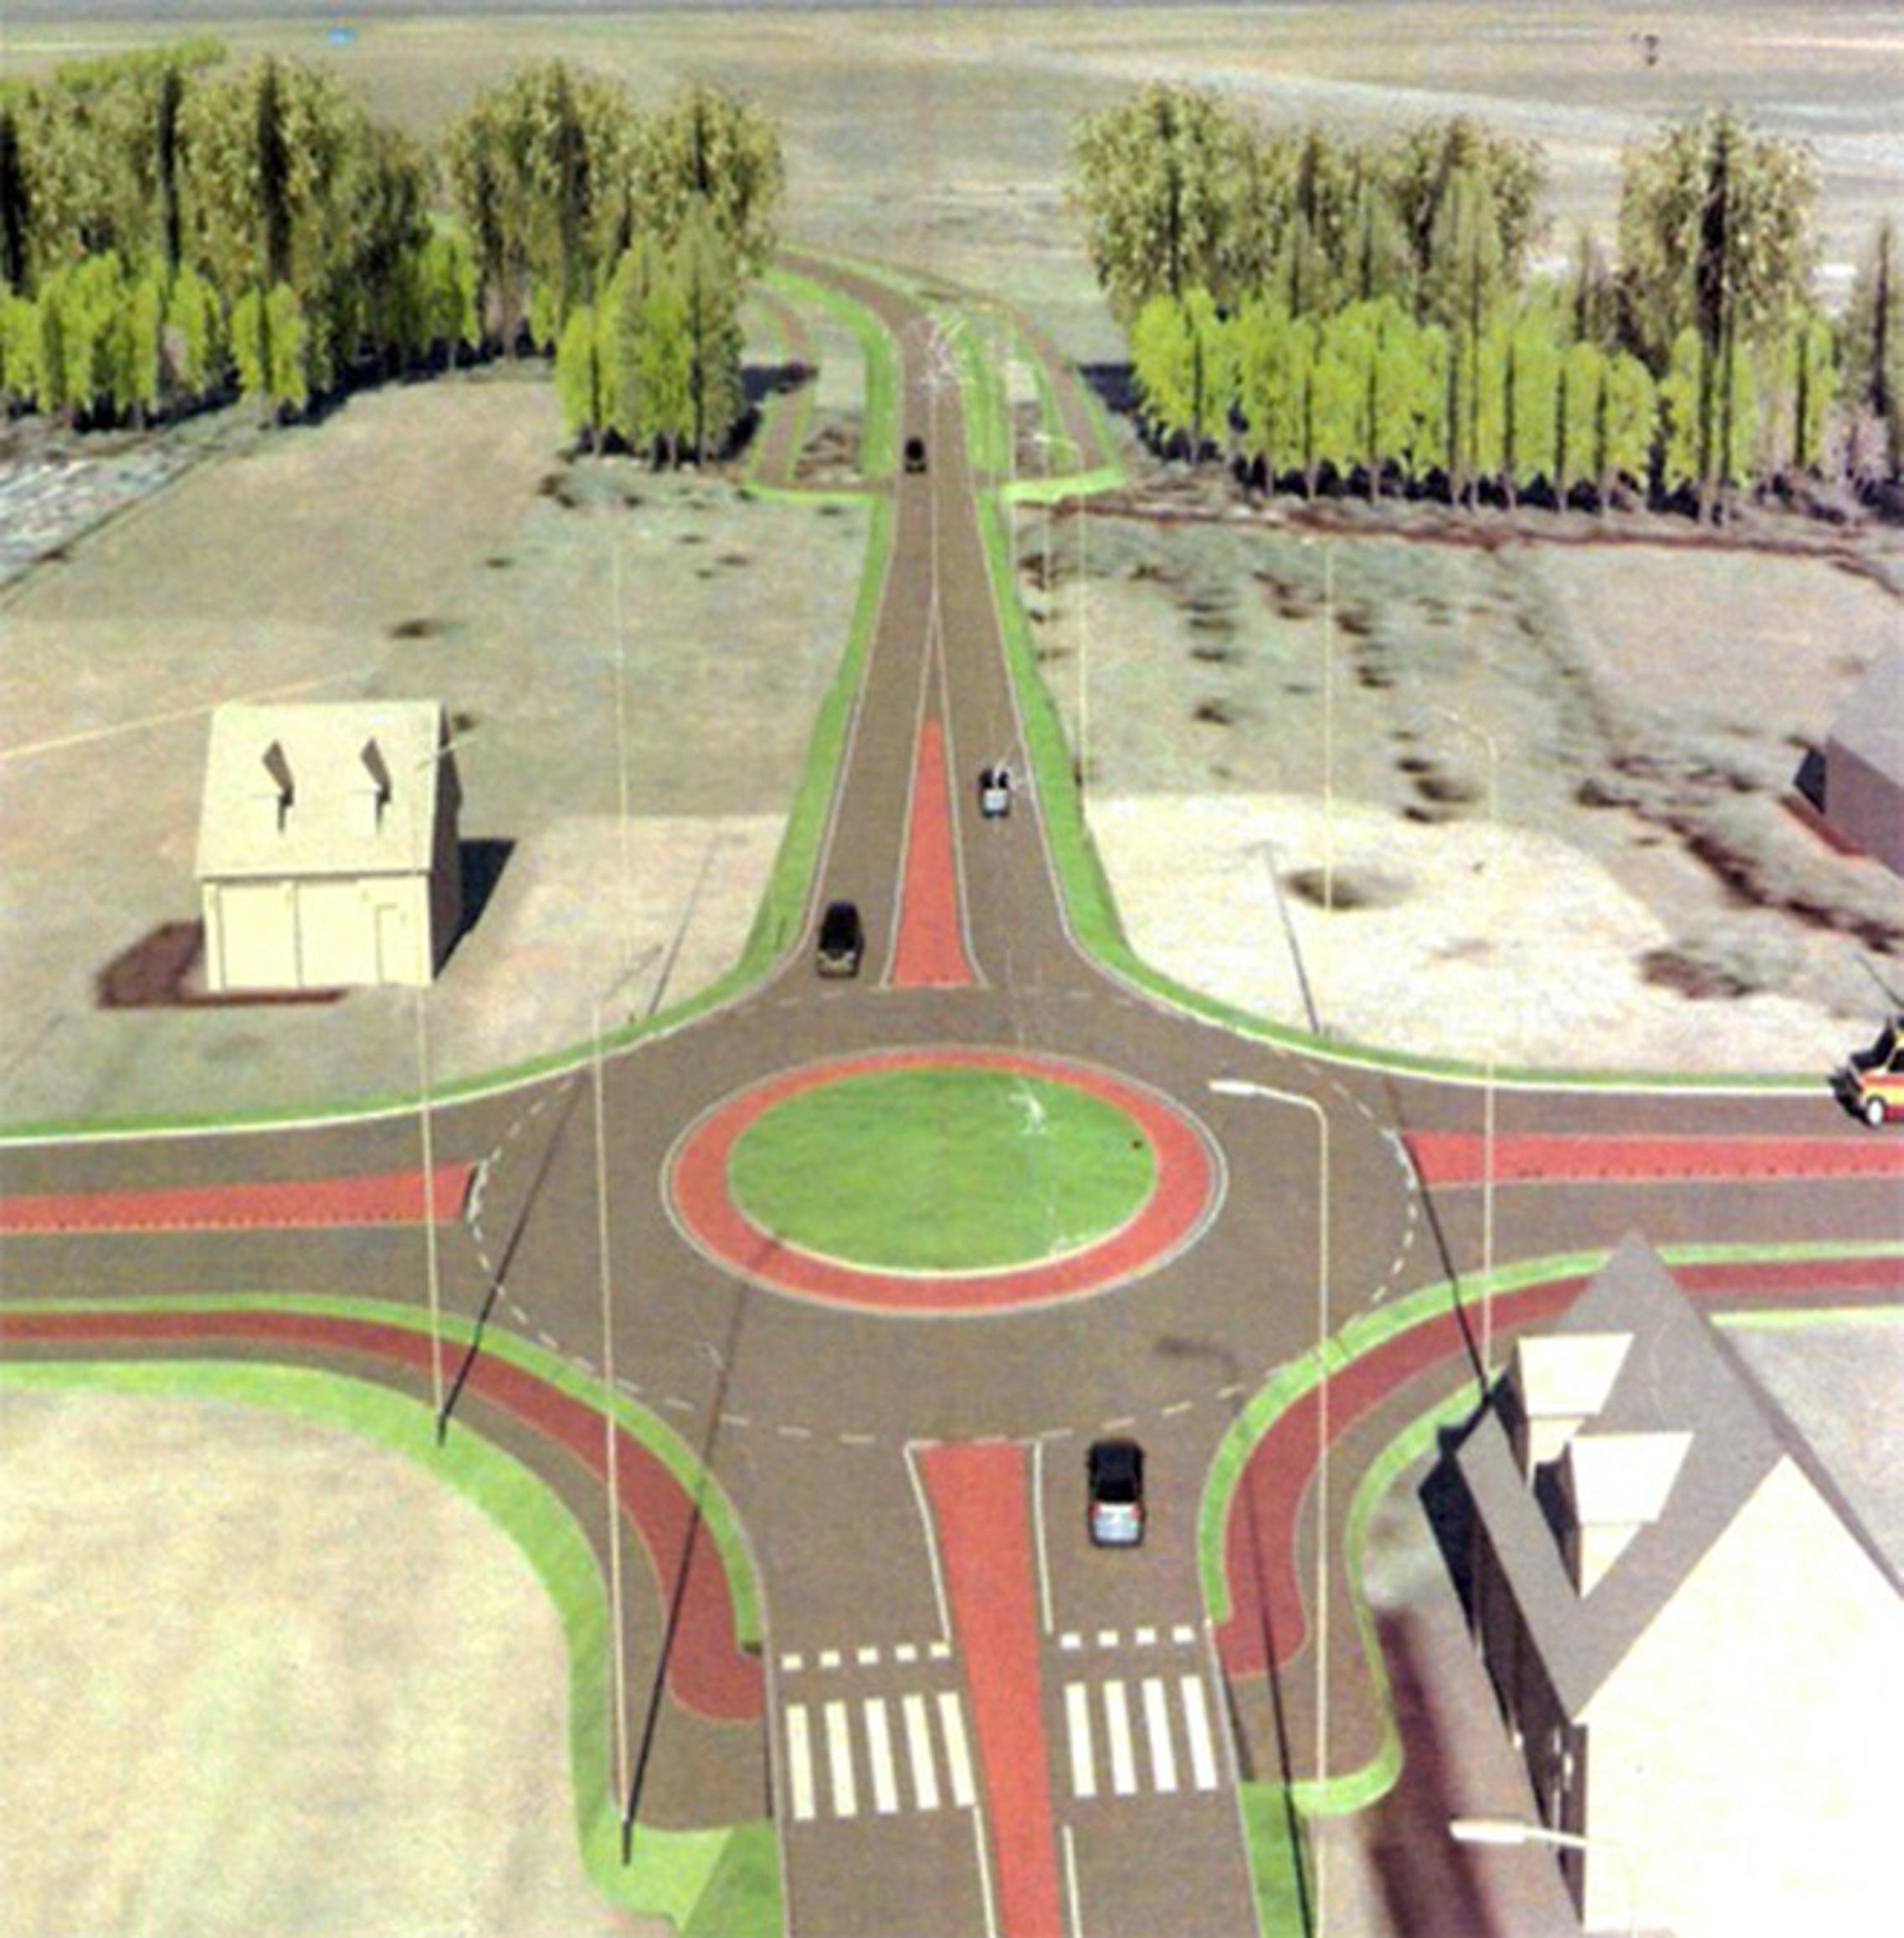 Prikaz kružnog toka križanja sa županijskom cestom Ž4157 iz smjera zapada